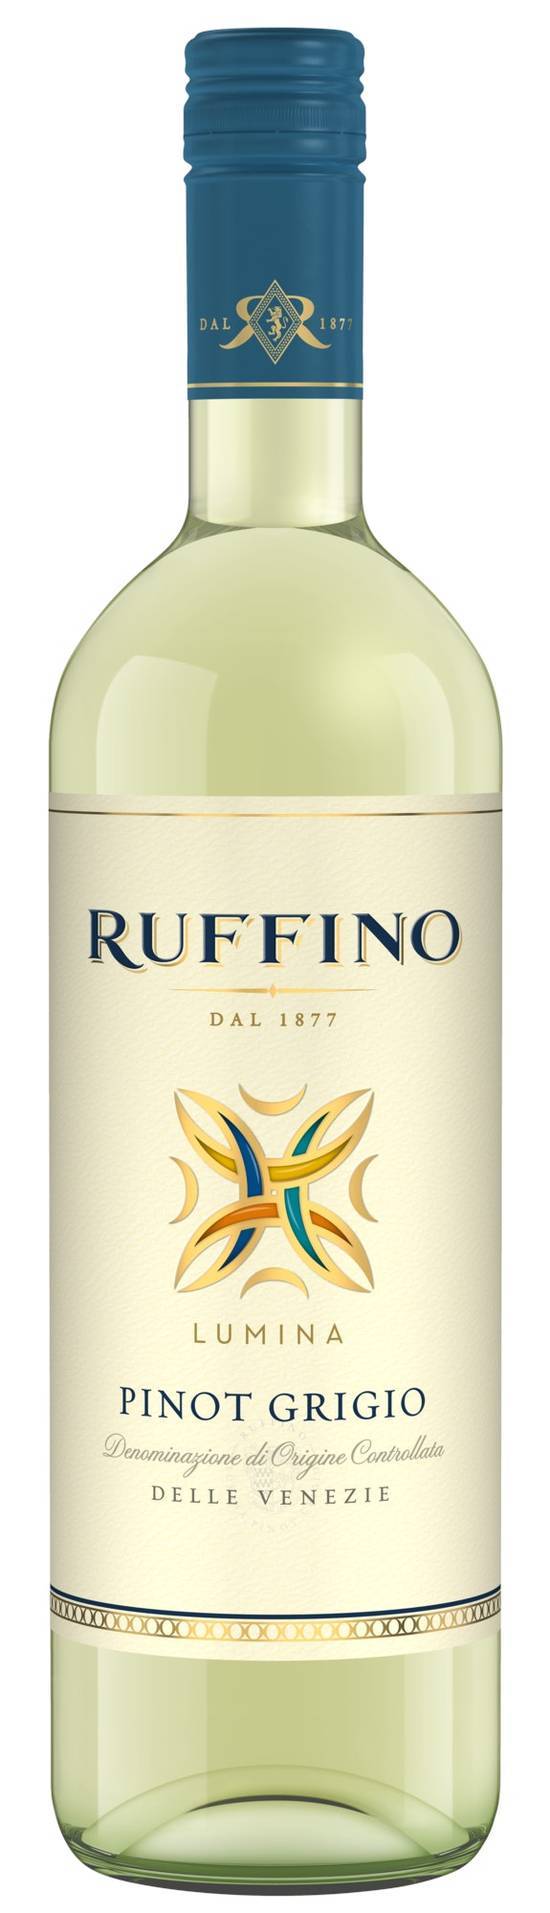 Ruffino Lumina Doc Pinot Grigio Italian White Wine (750 ml)